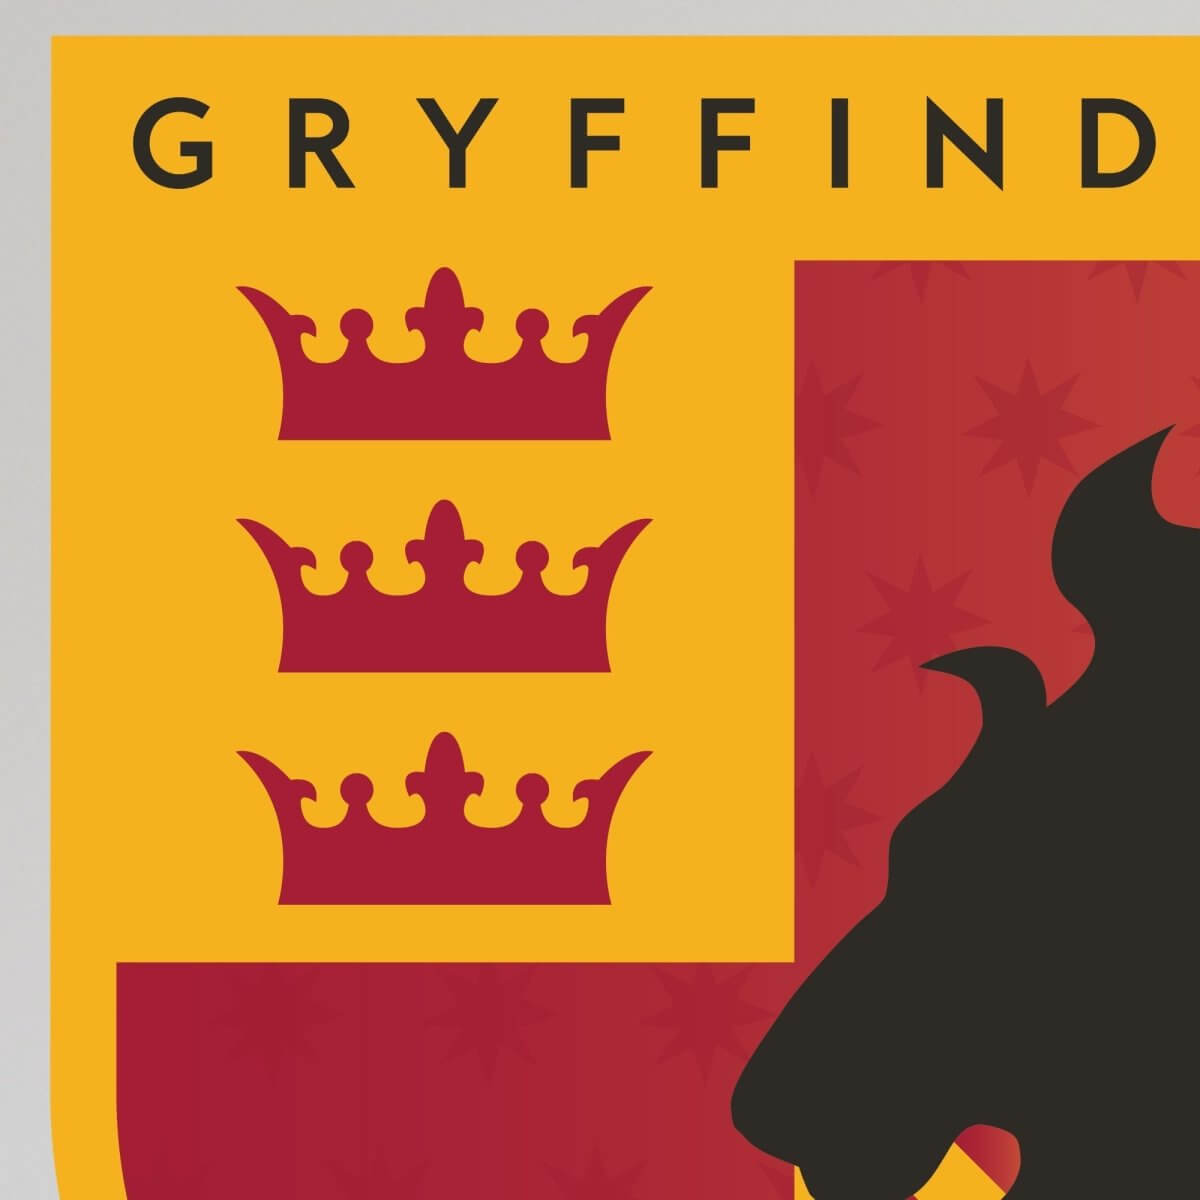 Wall Sticker Harry Potter Gryffindor Emblem